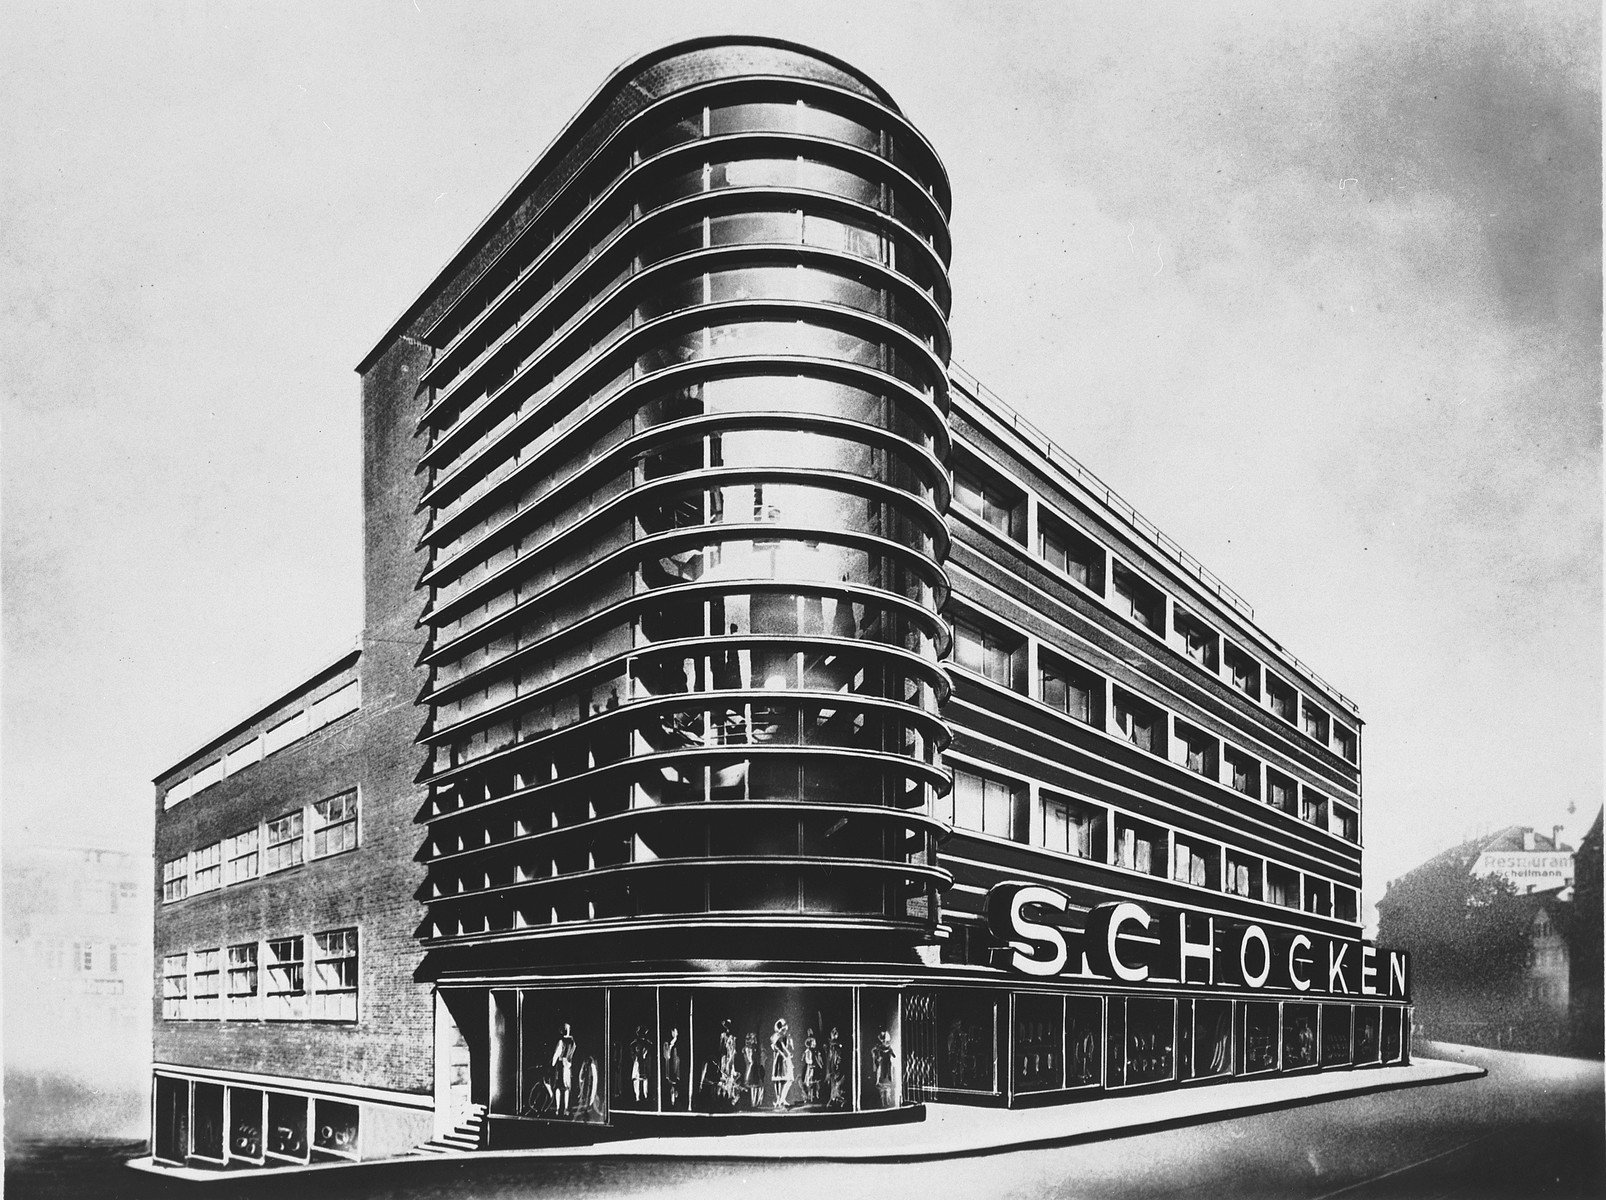 View of the Schocken department store in Stuttgart, Germany.